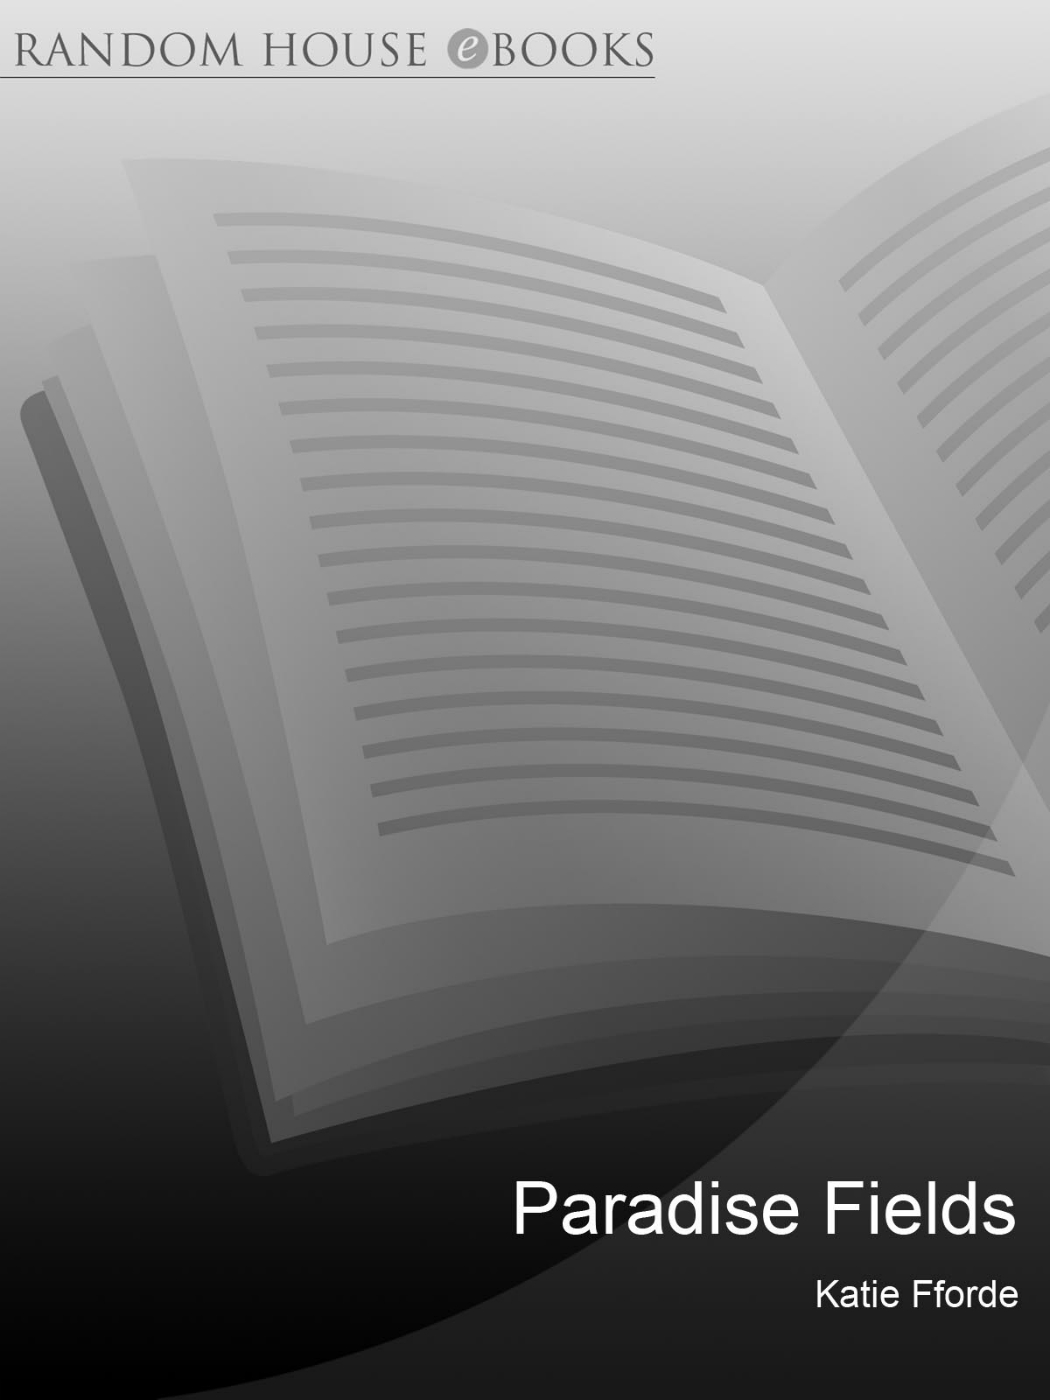 Paradise Fields (2003) by Katie Fforde